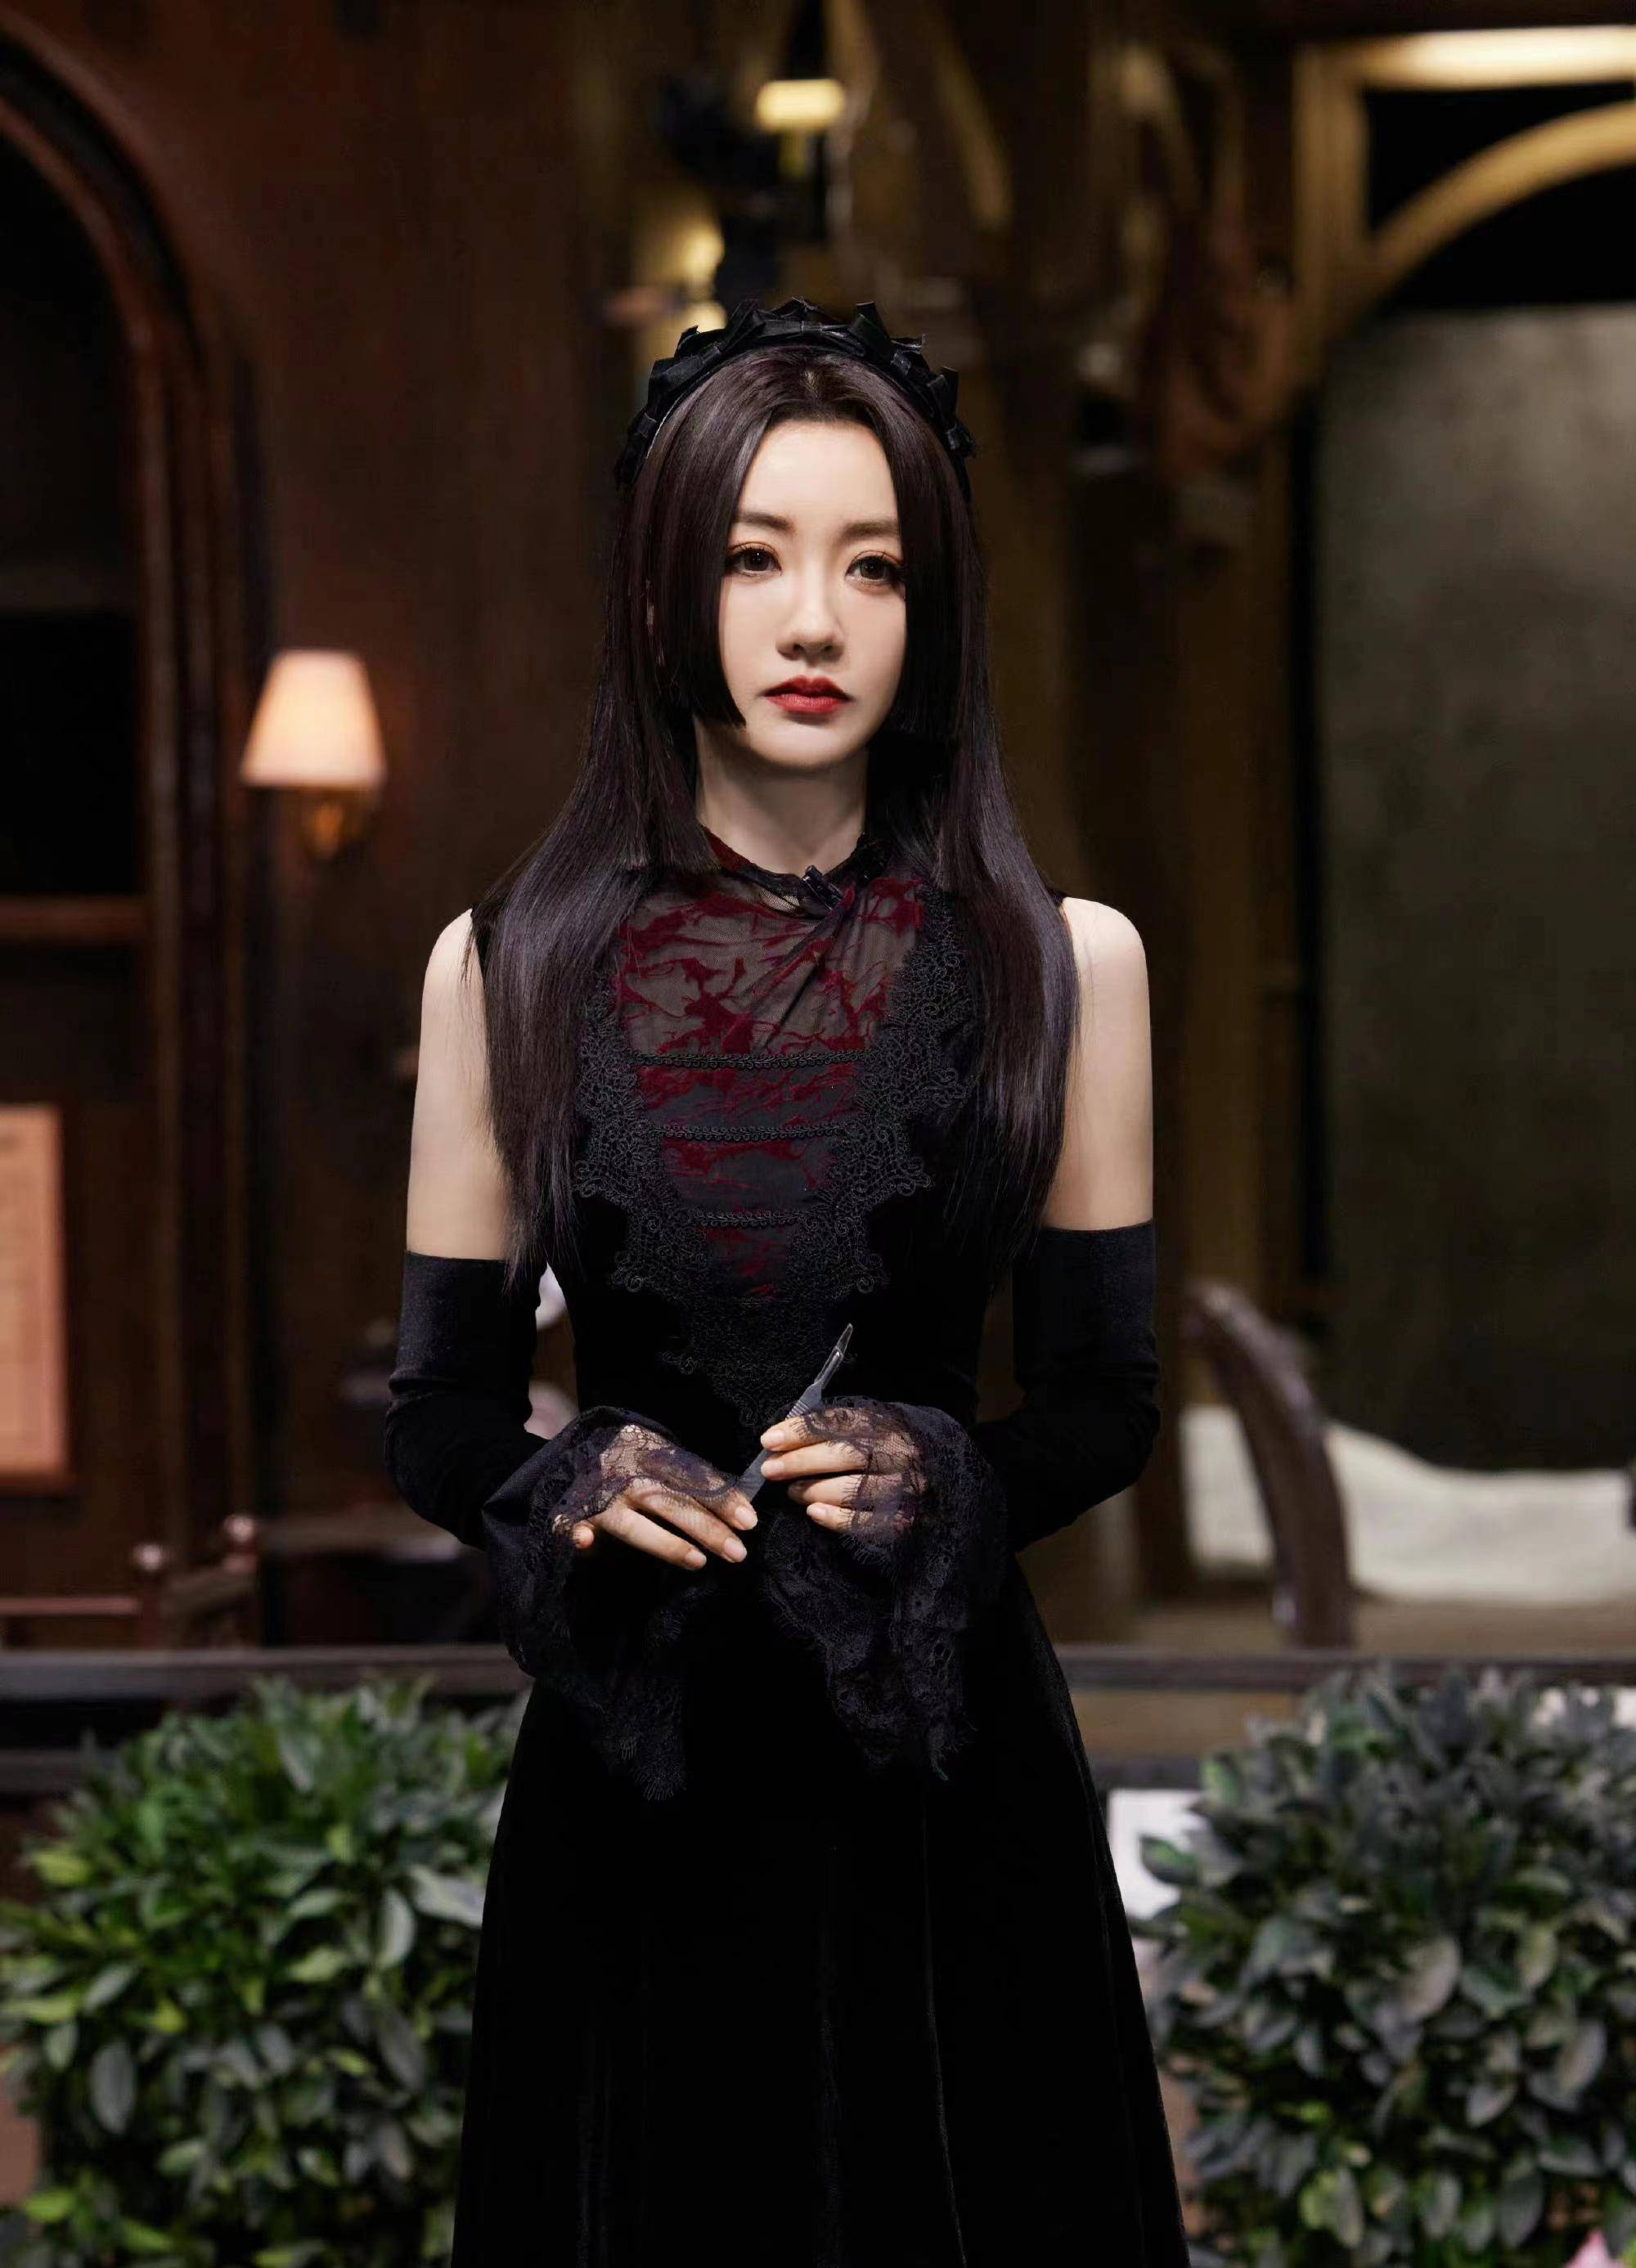 杨蓉和大侦探新造型,公主剪发型搭配丝绒连衣裙,暗黑又专属!